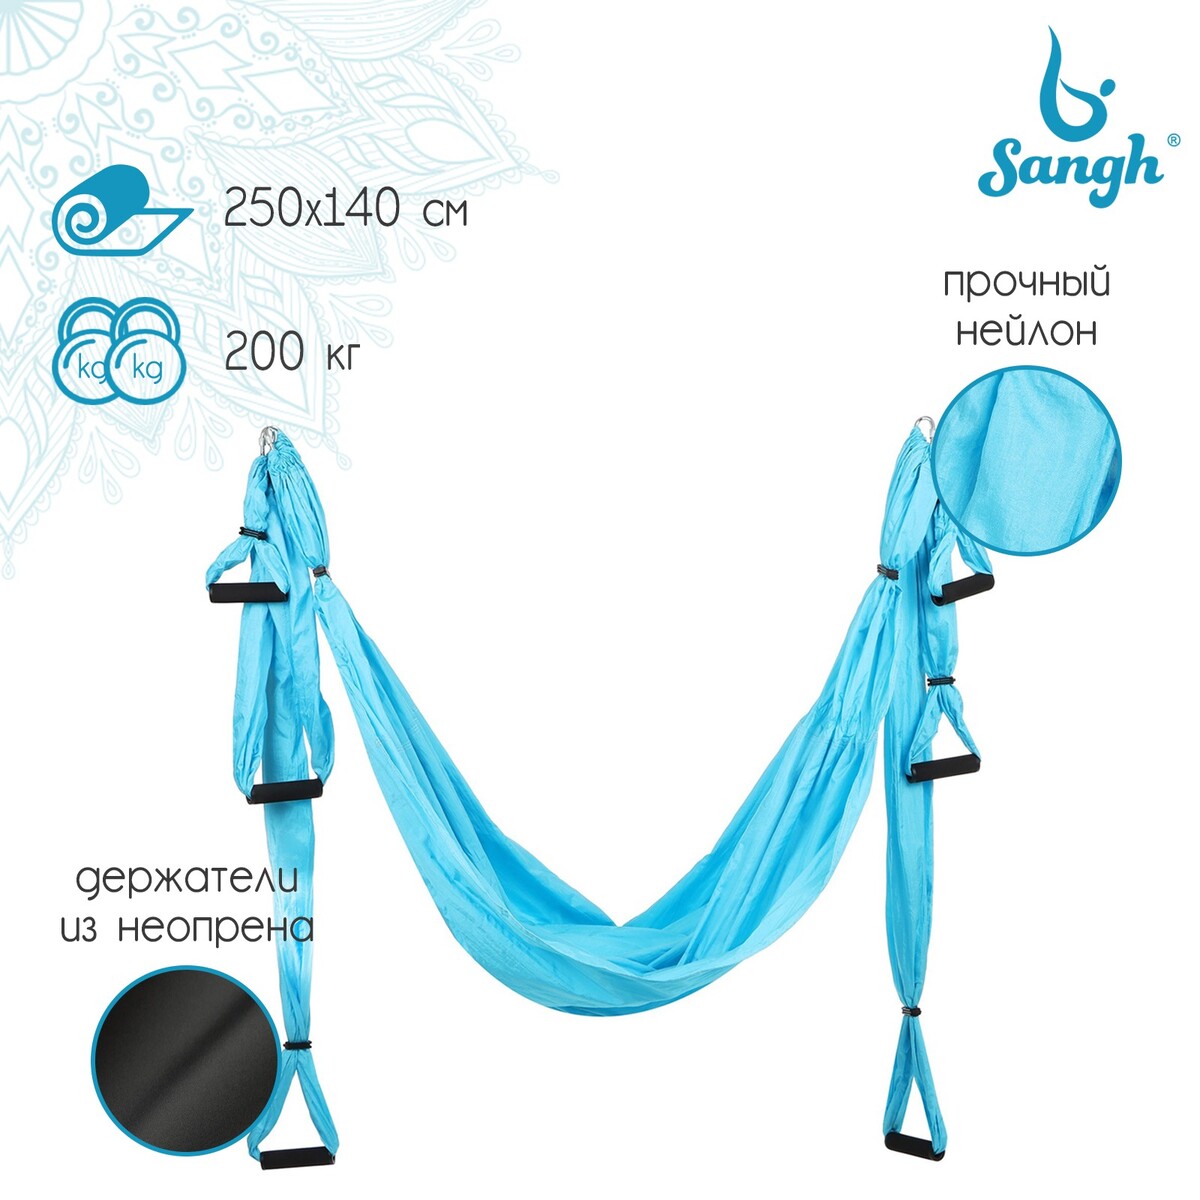 Гамак для йоги sangh, 250×140 см, цвет голубой гамак для йоги sangh 250×140 см фиолетовый